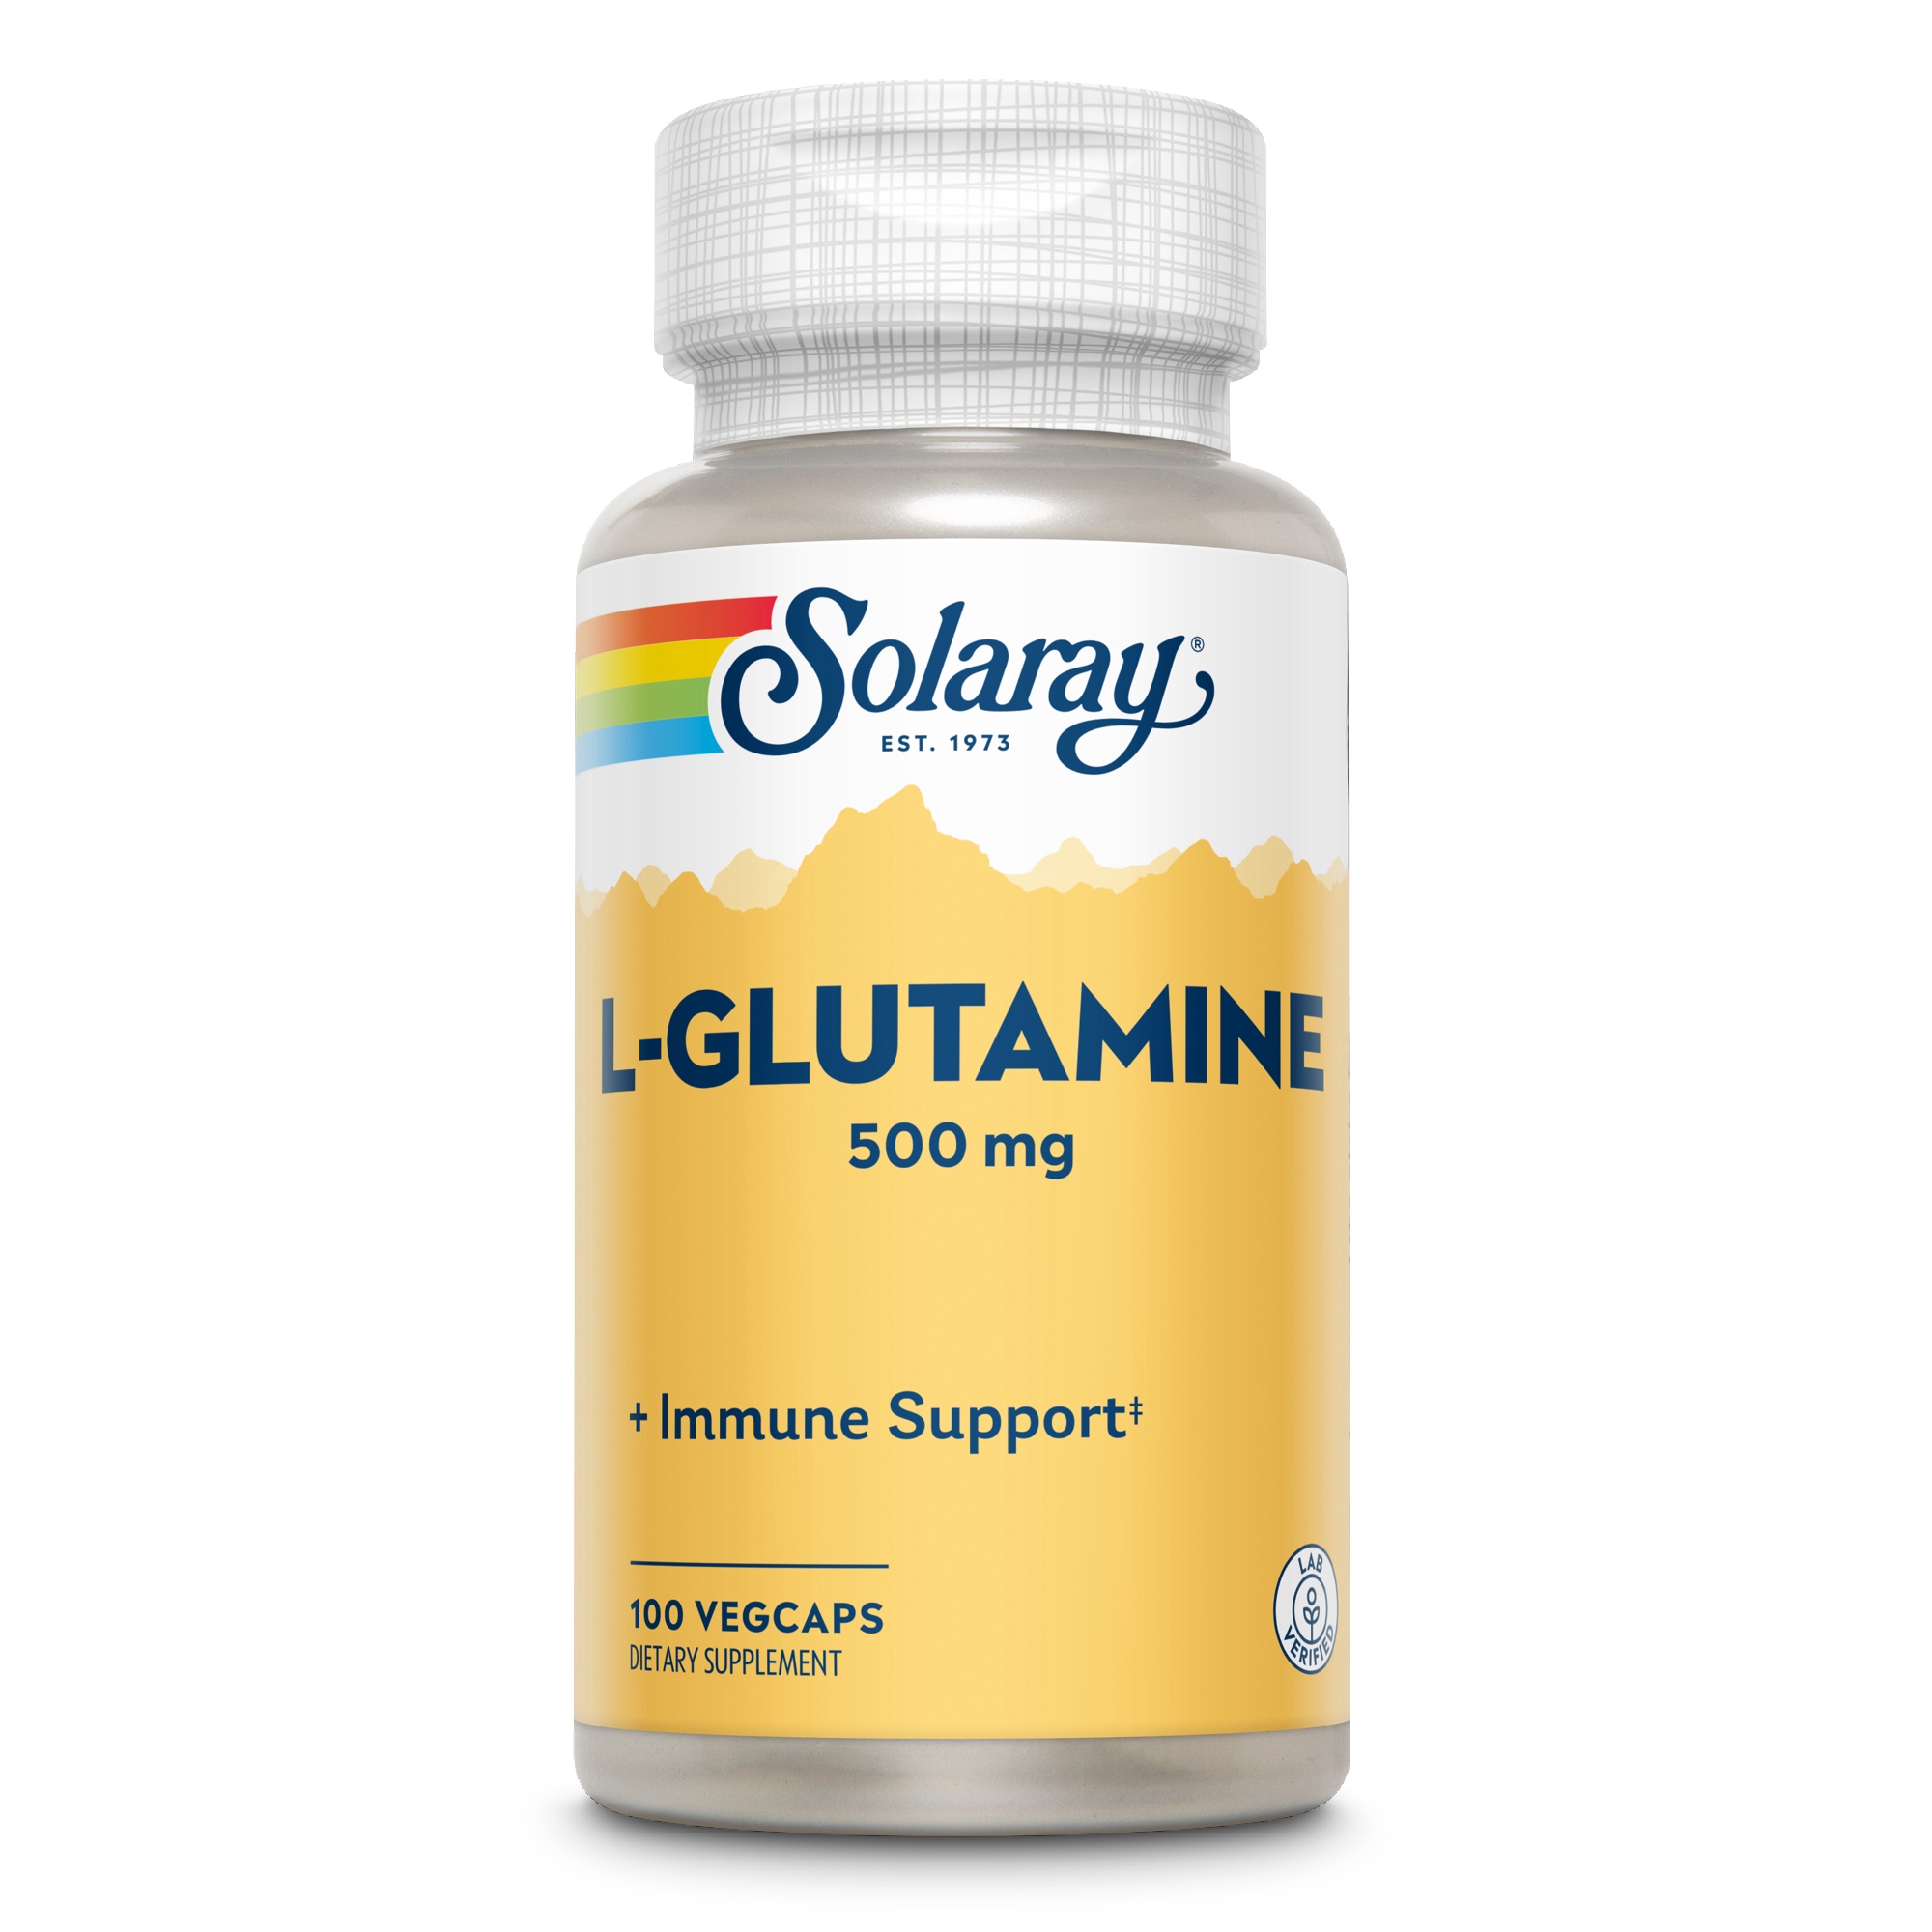 L-Glutamin 500 mg